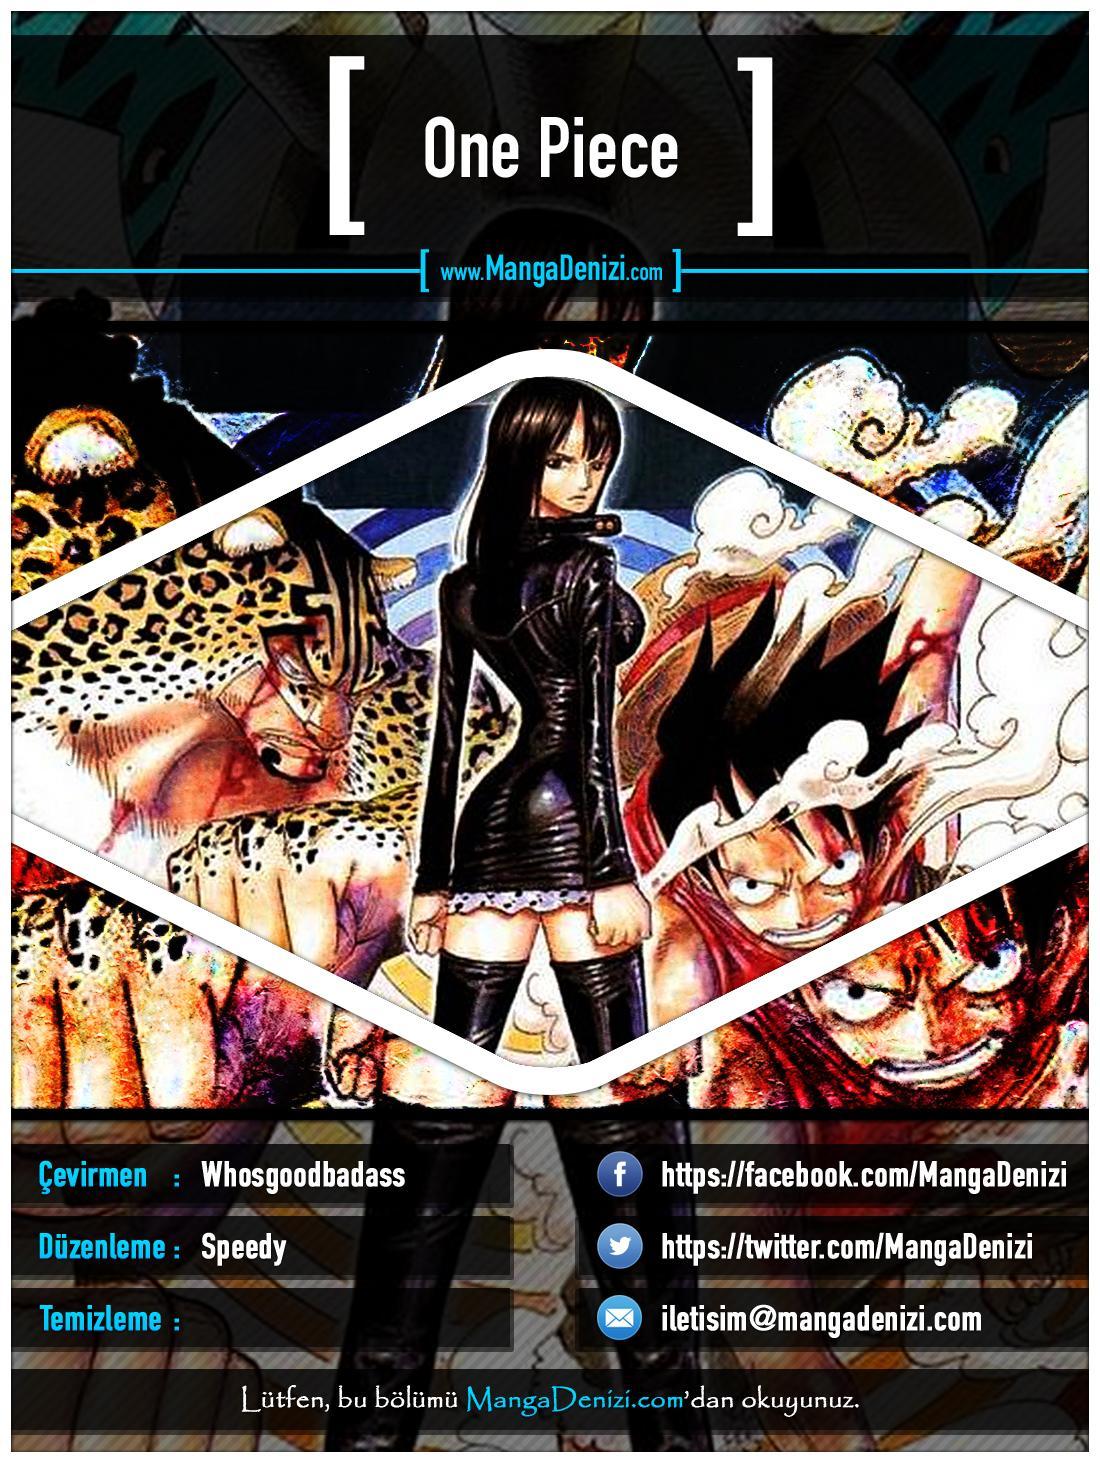 One Piece [Renkli] mangasının 0373 bölümünün 1. sayfasını okuyorsunuz.